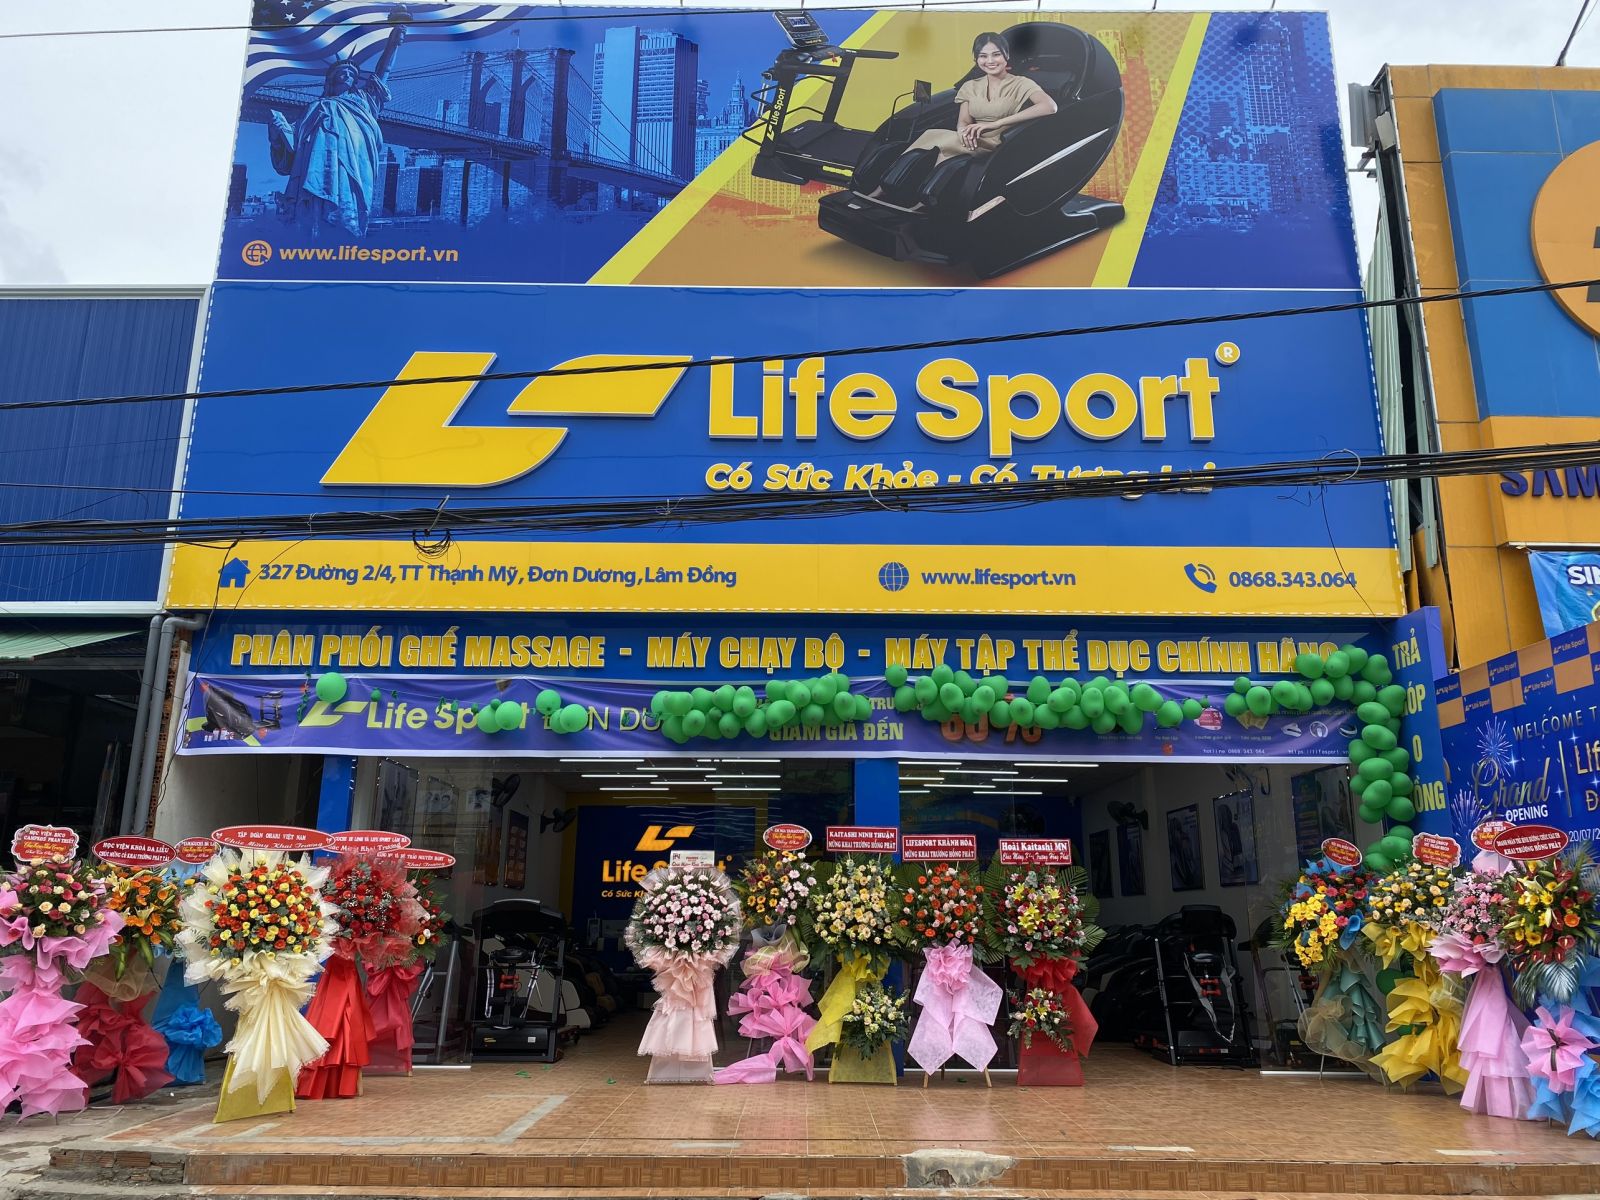 Lifesport Đơn Dương, Lâm Đồng